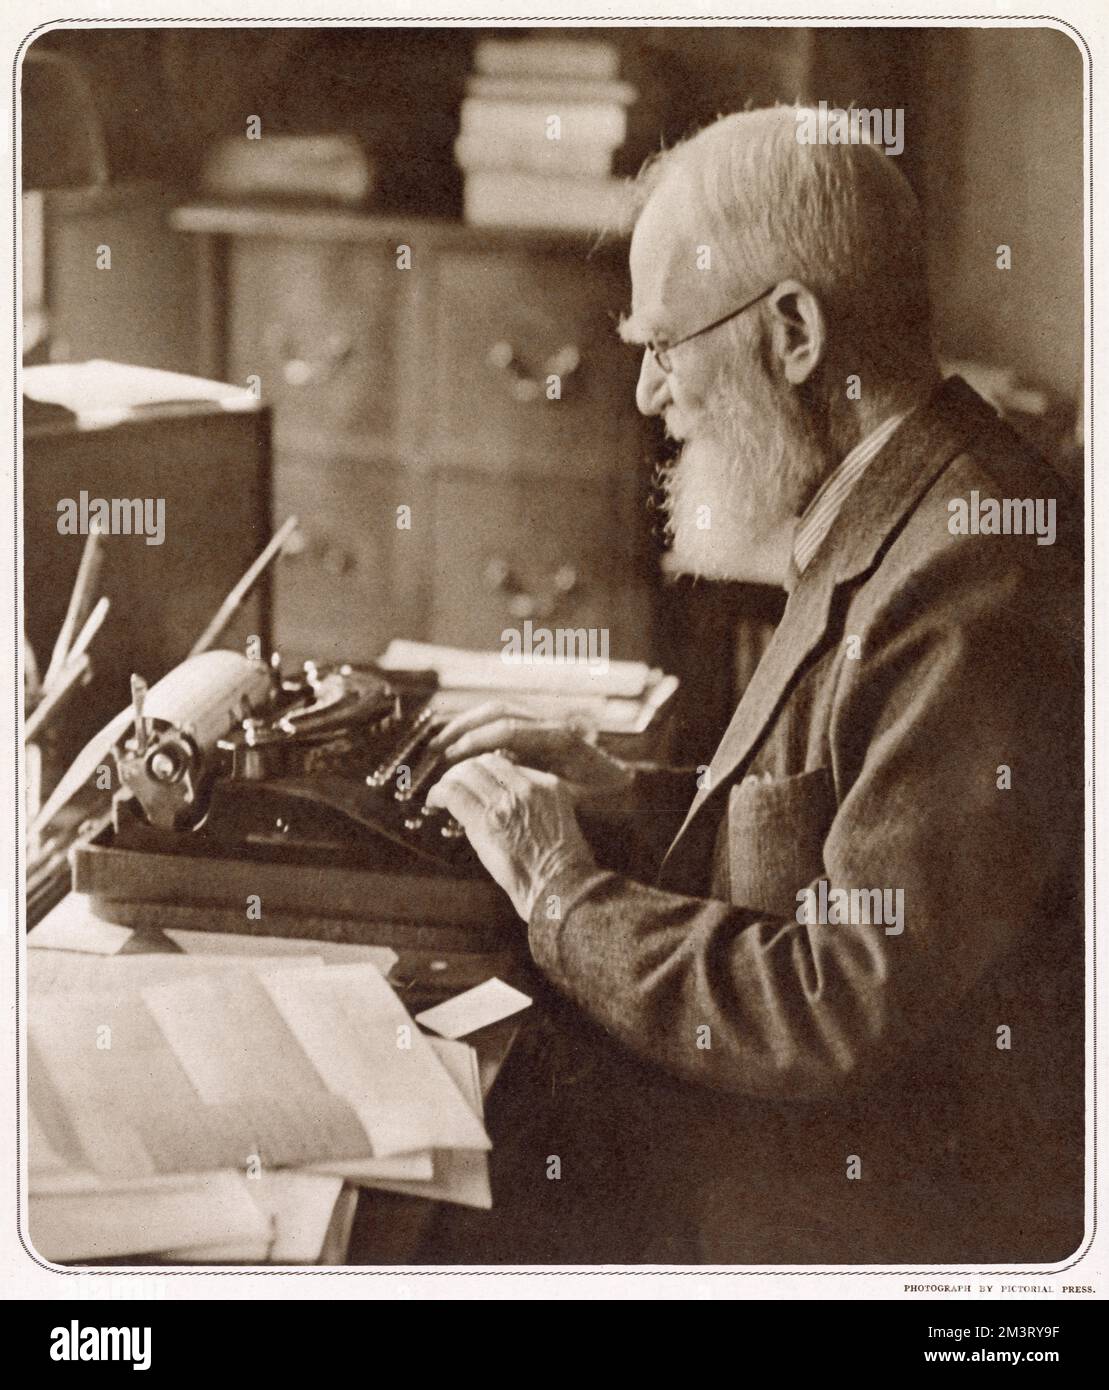 George Bernard Shaw (1856 - 1950), drammaturgo irlandese, critico, polemicista e attivista politico. Fotografia che mostra Bernard Shaw alla sua macchina da scrivere quando aveva 82 anni. Foto Stock